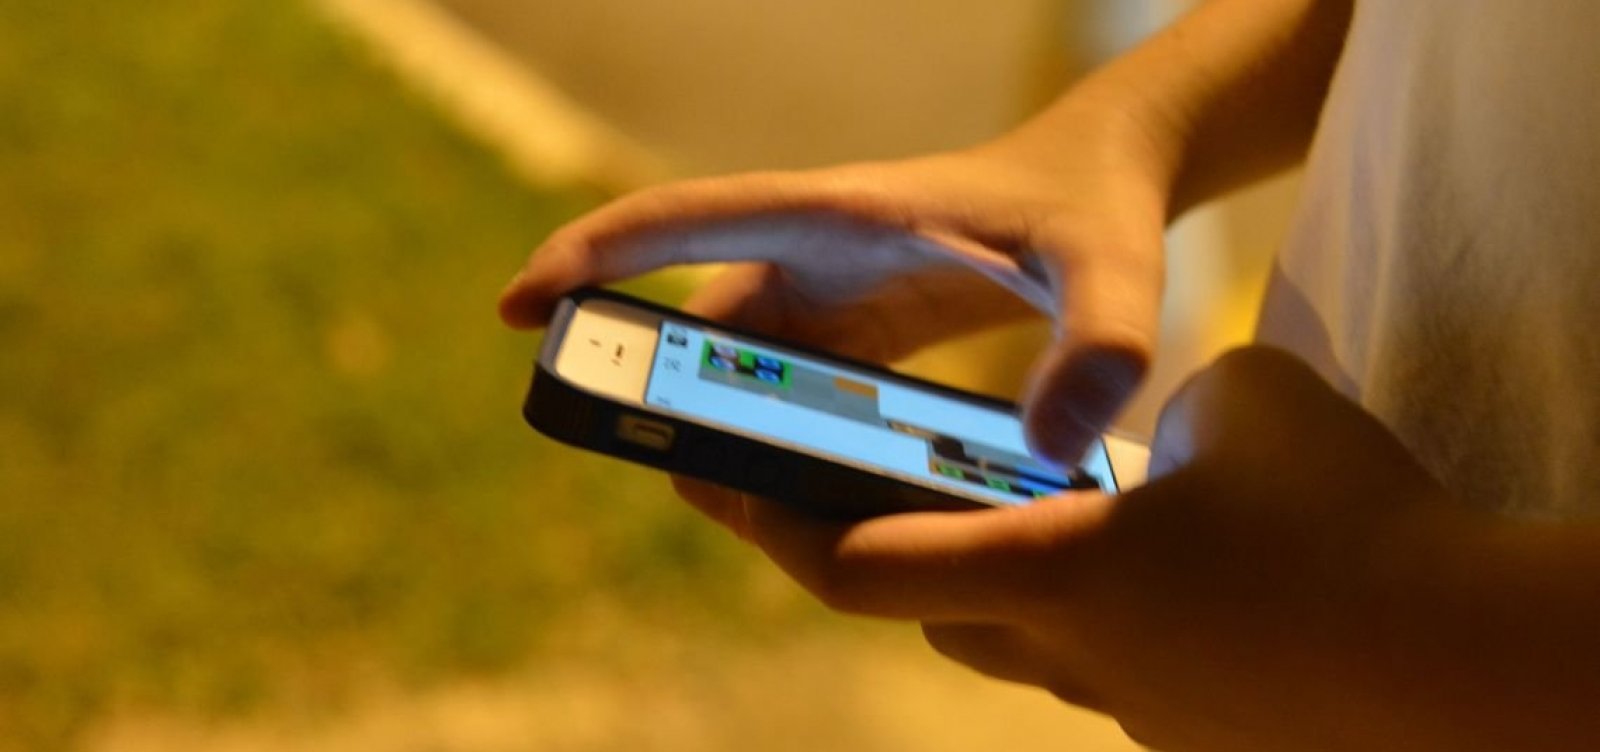 Anatel inicia bloqueio de todas as linhas de celulares pré-pagos com cadastro desatualizado